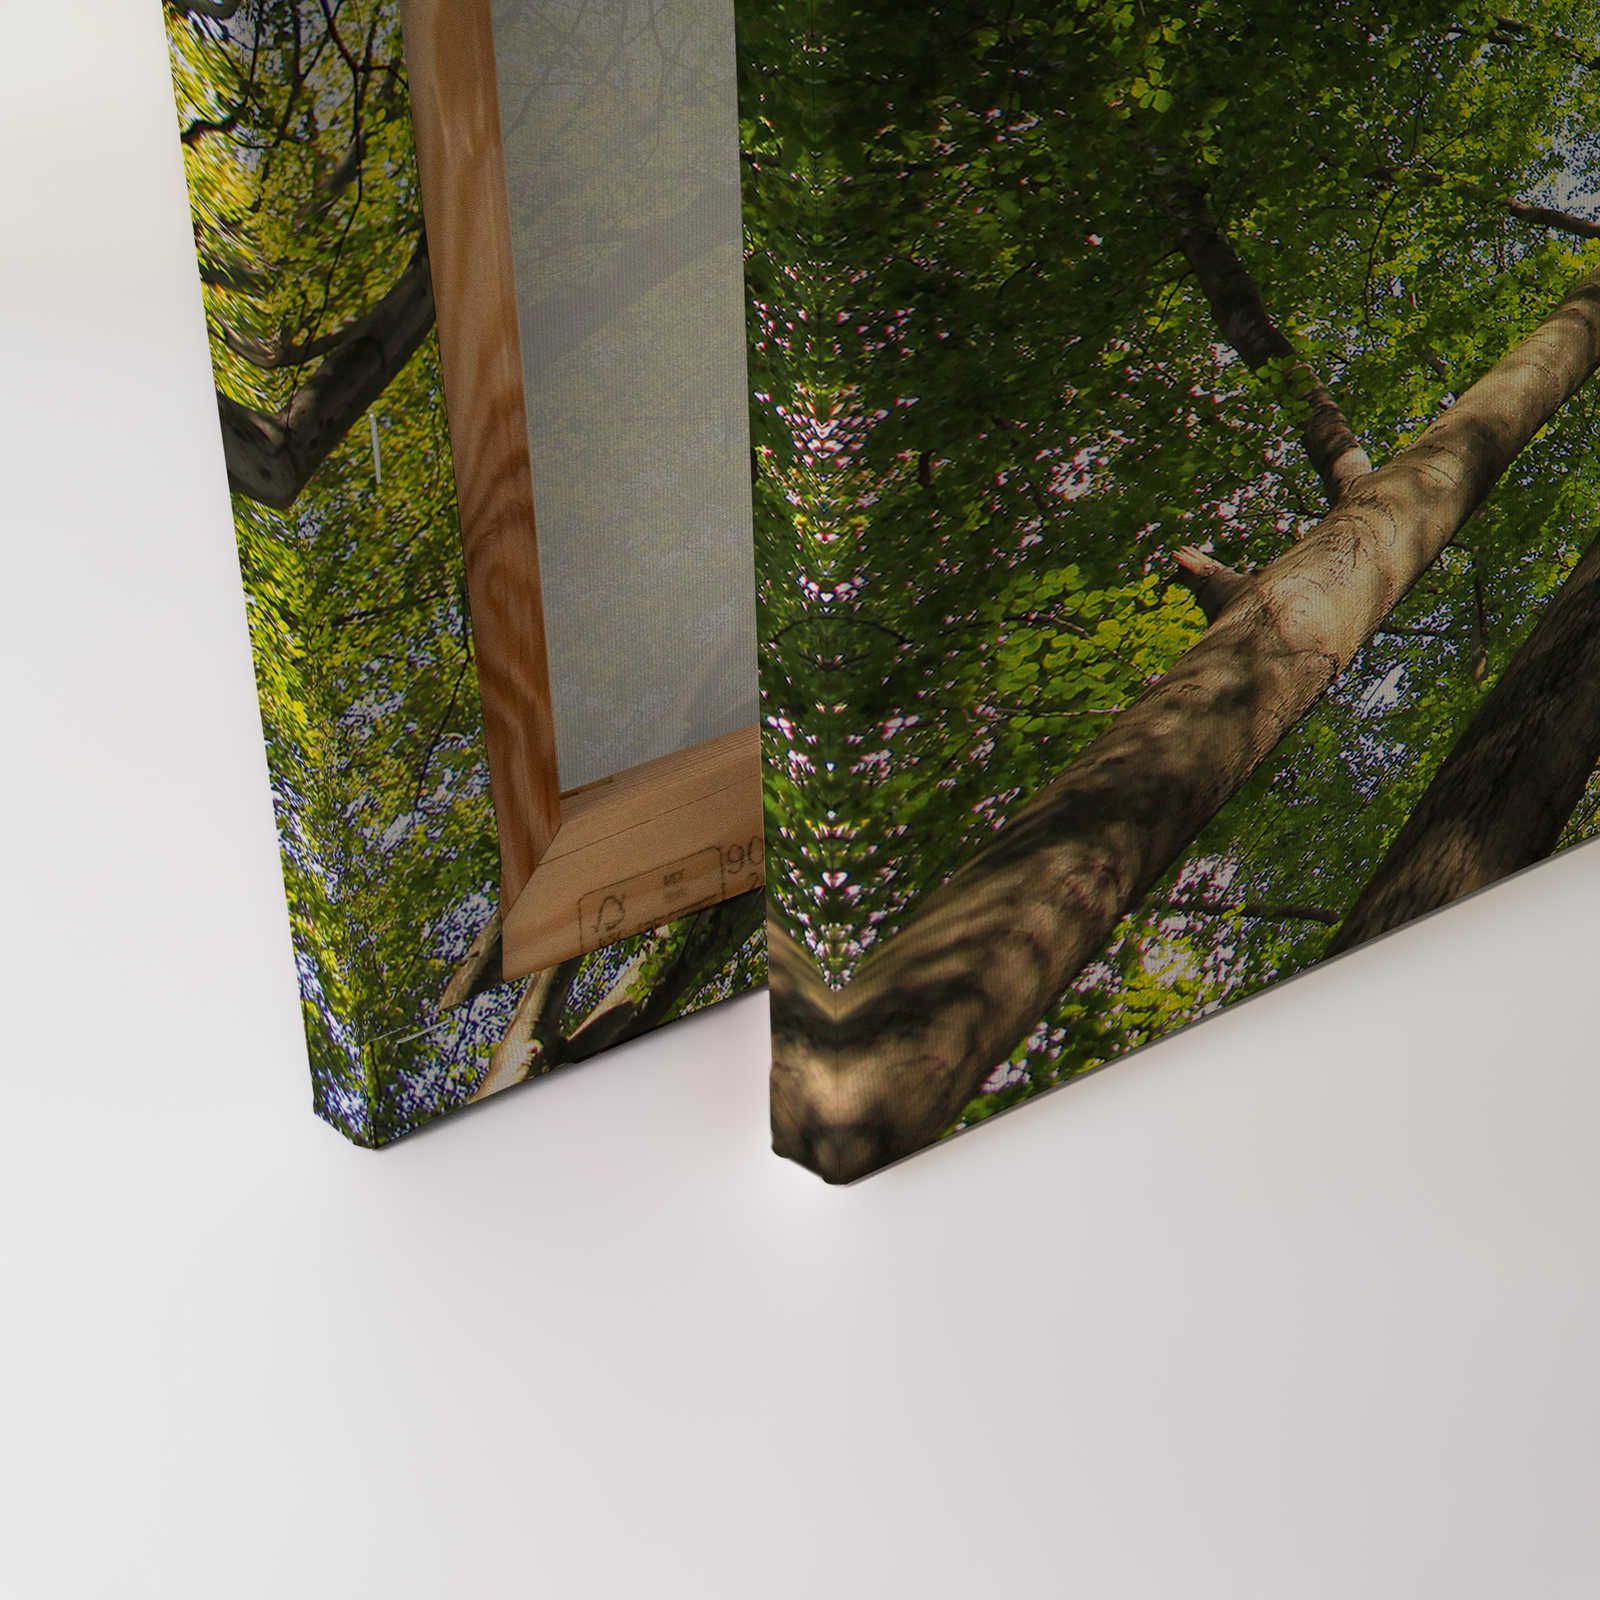             Cuadro lienzo follaje con copas de árboles de bosque caducifolio - 0,90 m x 0,60 m
        